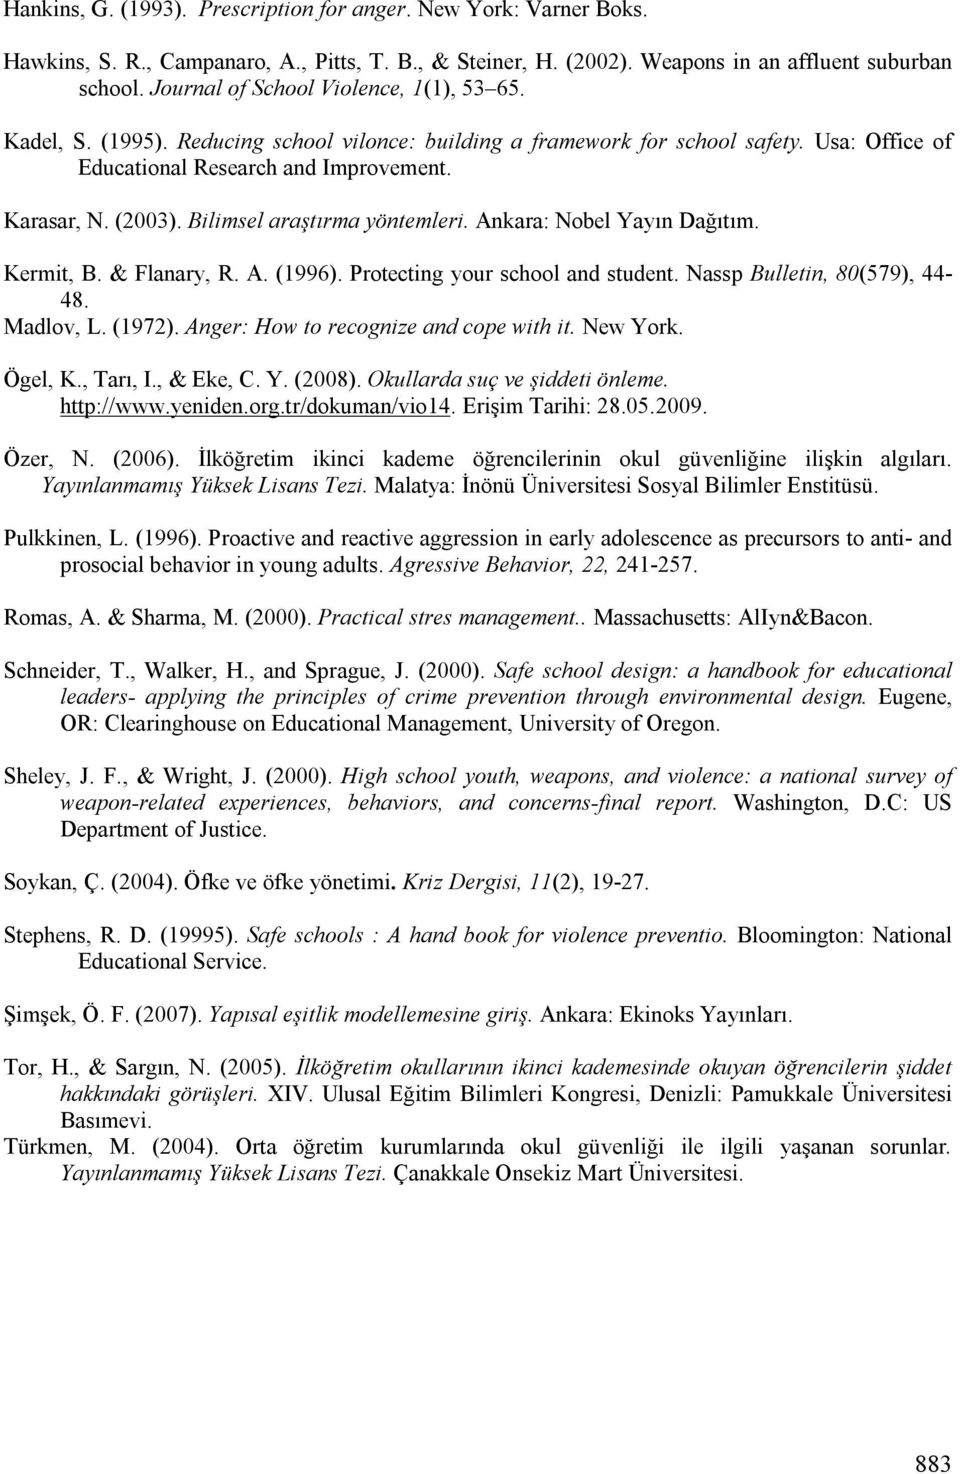 Bilimsel araştırma yöntemleri. Ankara: Nobel Yayın Dağıtım. Kermit, B. & Flanary, R. A. (1996). Protecting your school and student. Nassp Bulletin, 80(579), 44-48. Madlov, L. (1972).